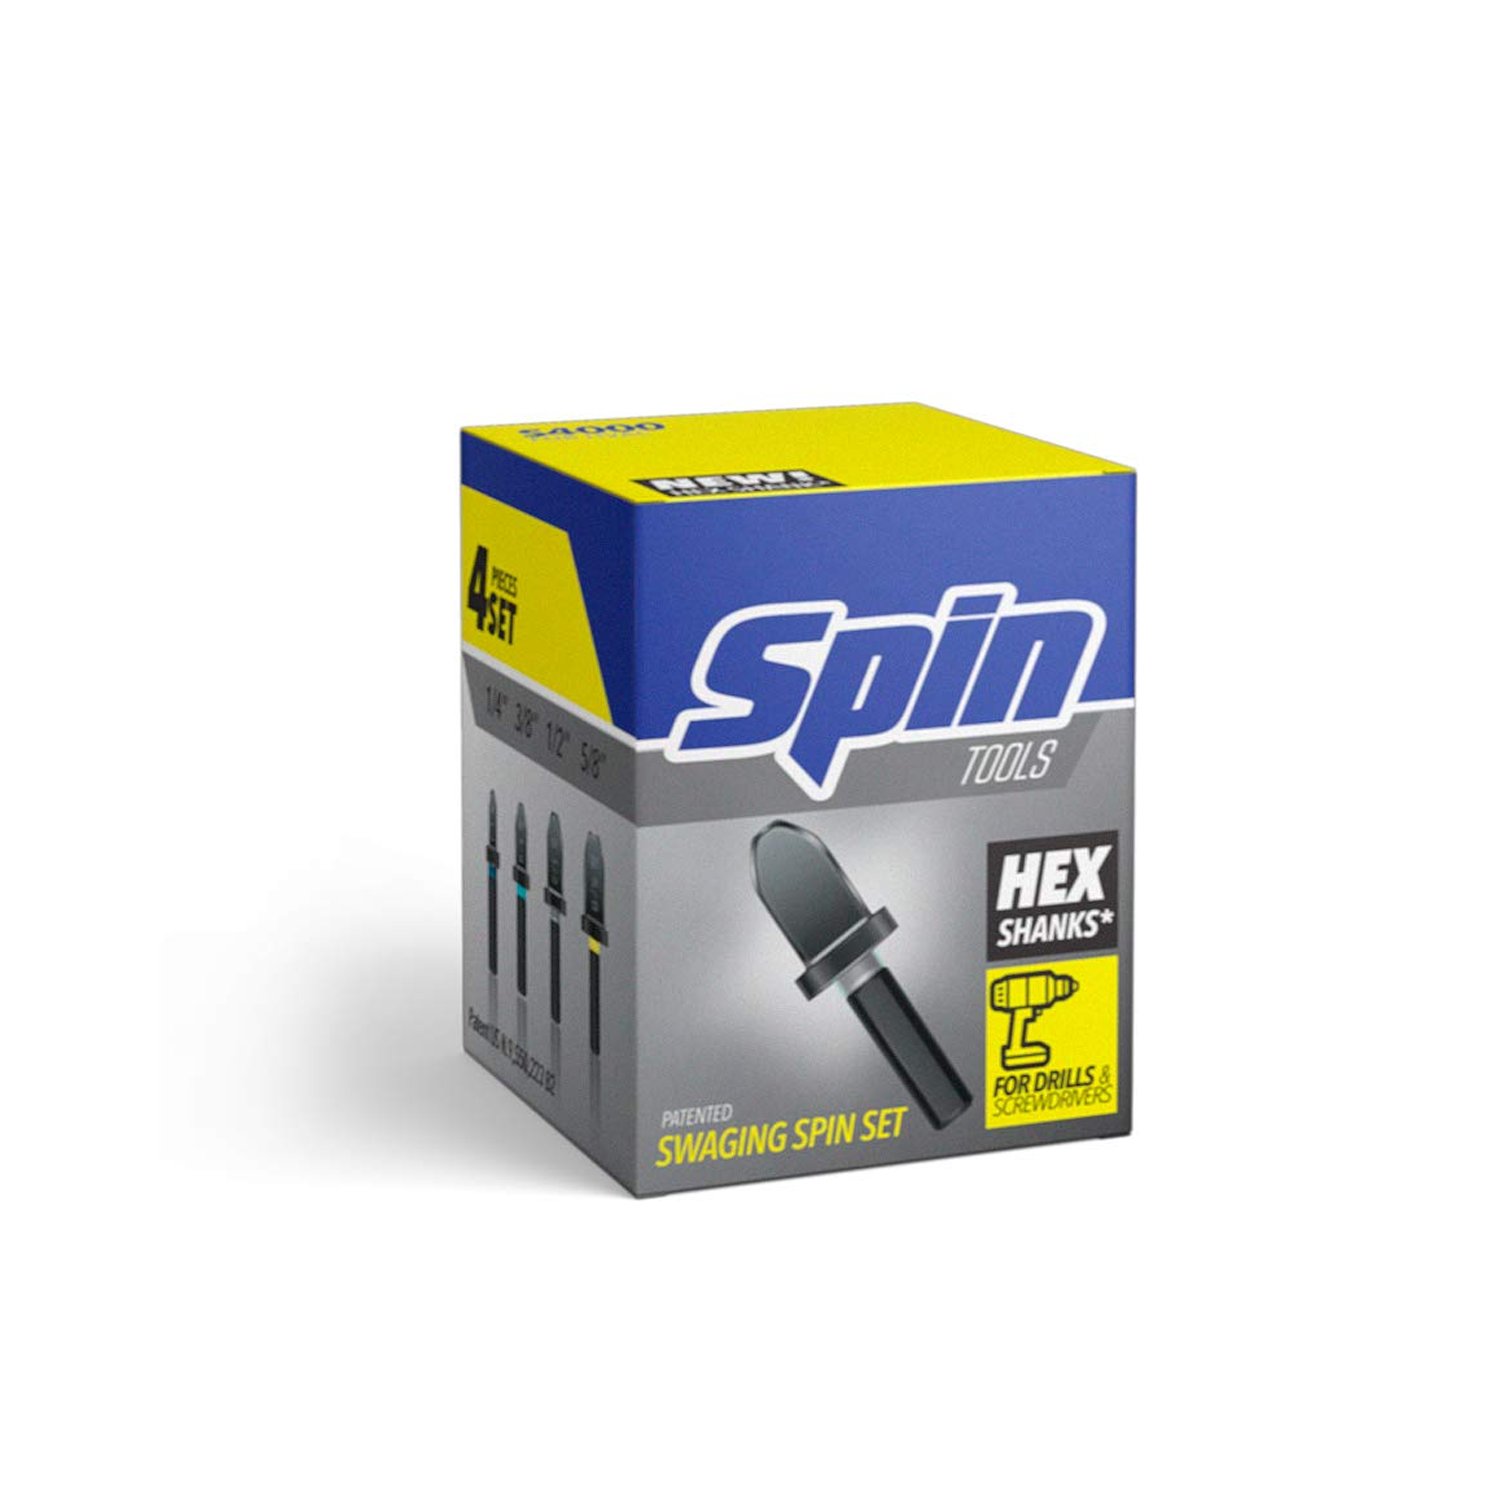 Spin Tools S4000 Zestaw szpilek obrotowych, 4-czesciowy, 1/4, 3/8, 1/2, 5/8 in.